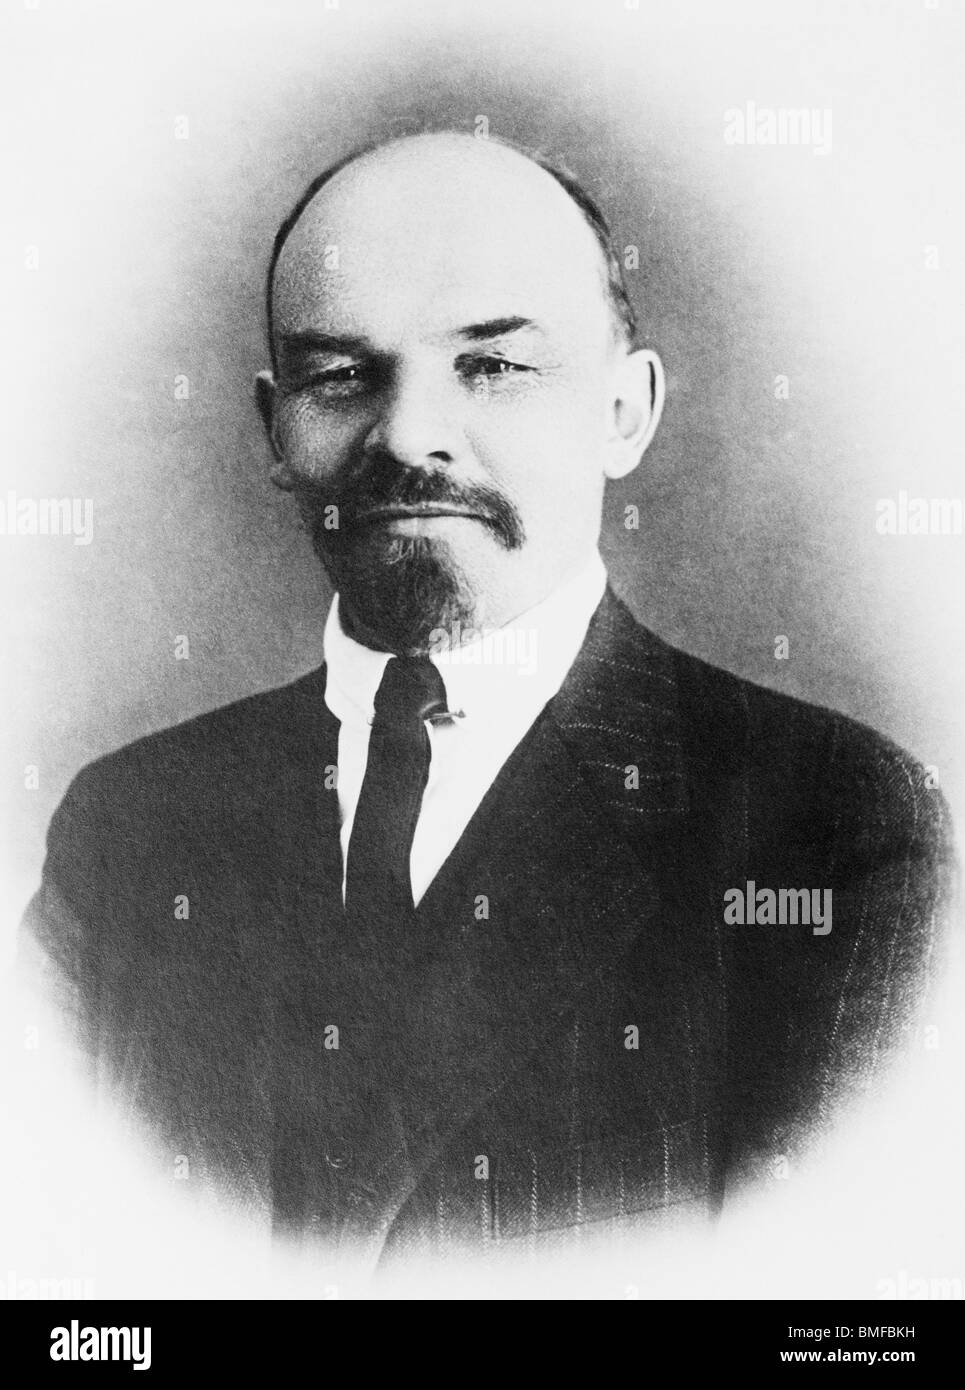 Sans date photo portrait de dirigeant communiste et révolutionnaire russe Vladimir Lénine (1870 - 1924). Banque D'Images